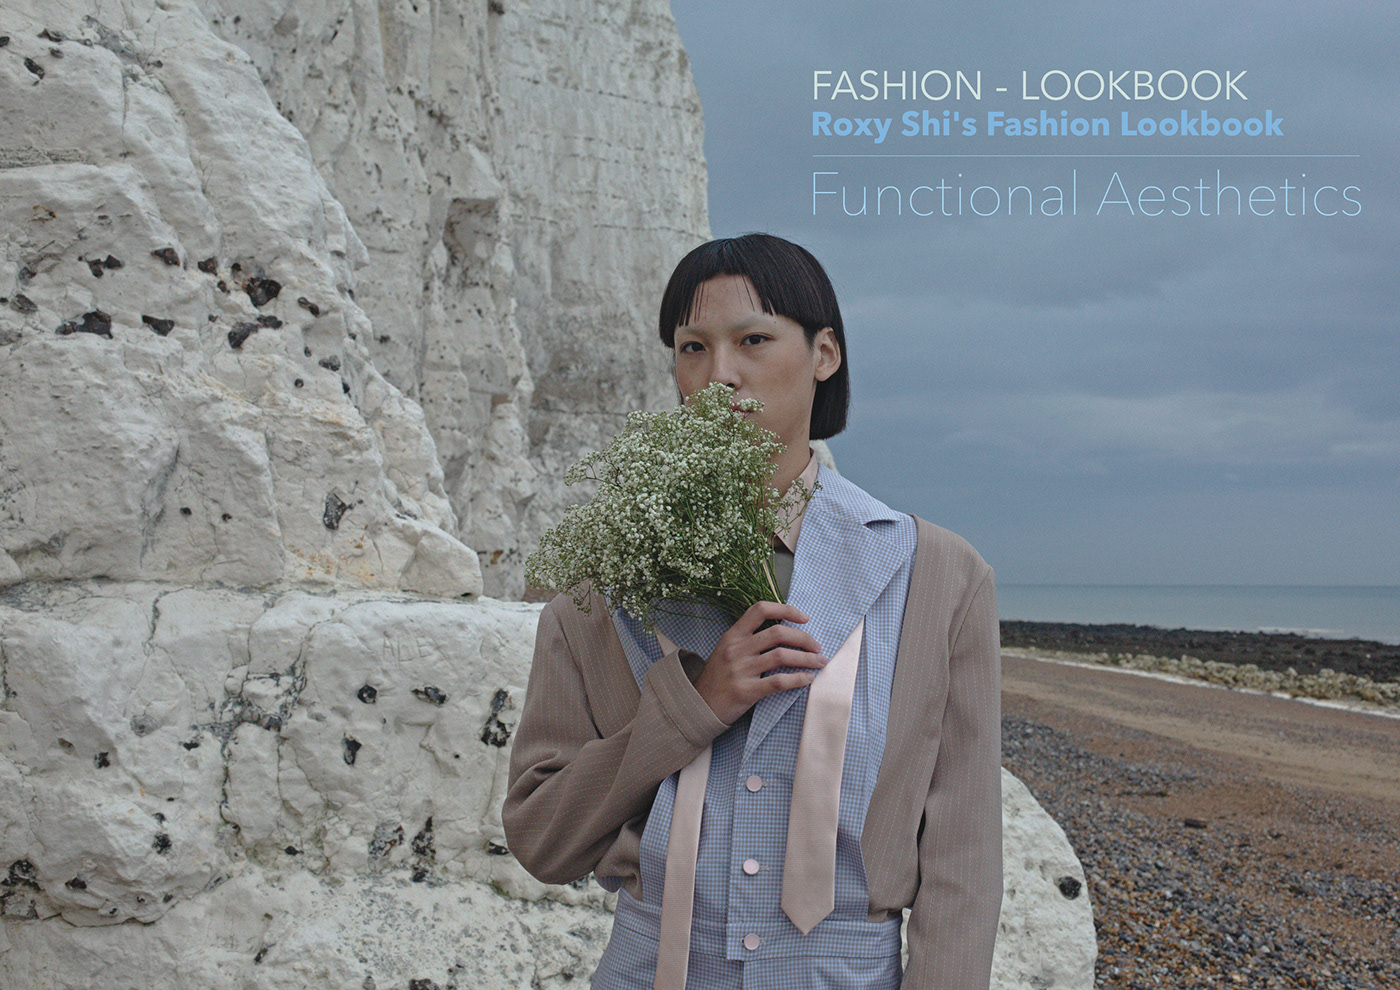 Fashion  Lookbook fashion desig graduate fashion week